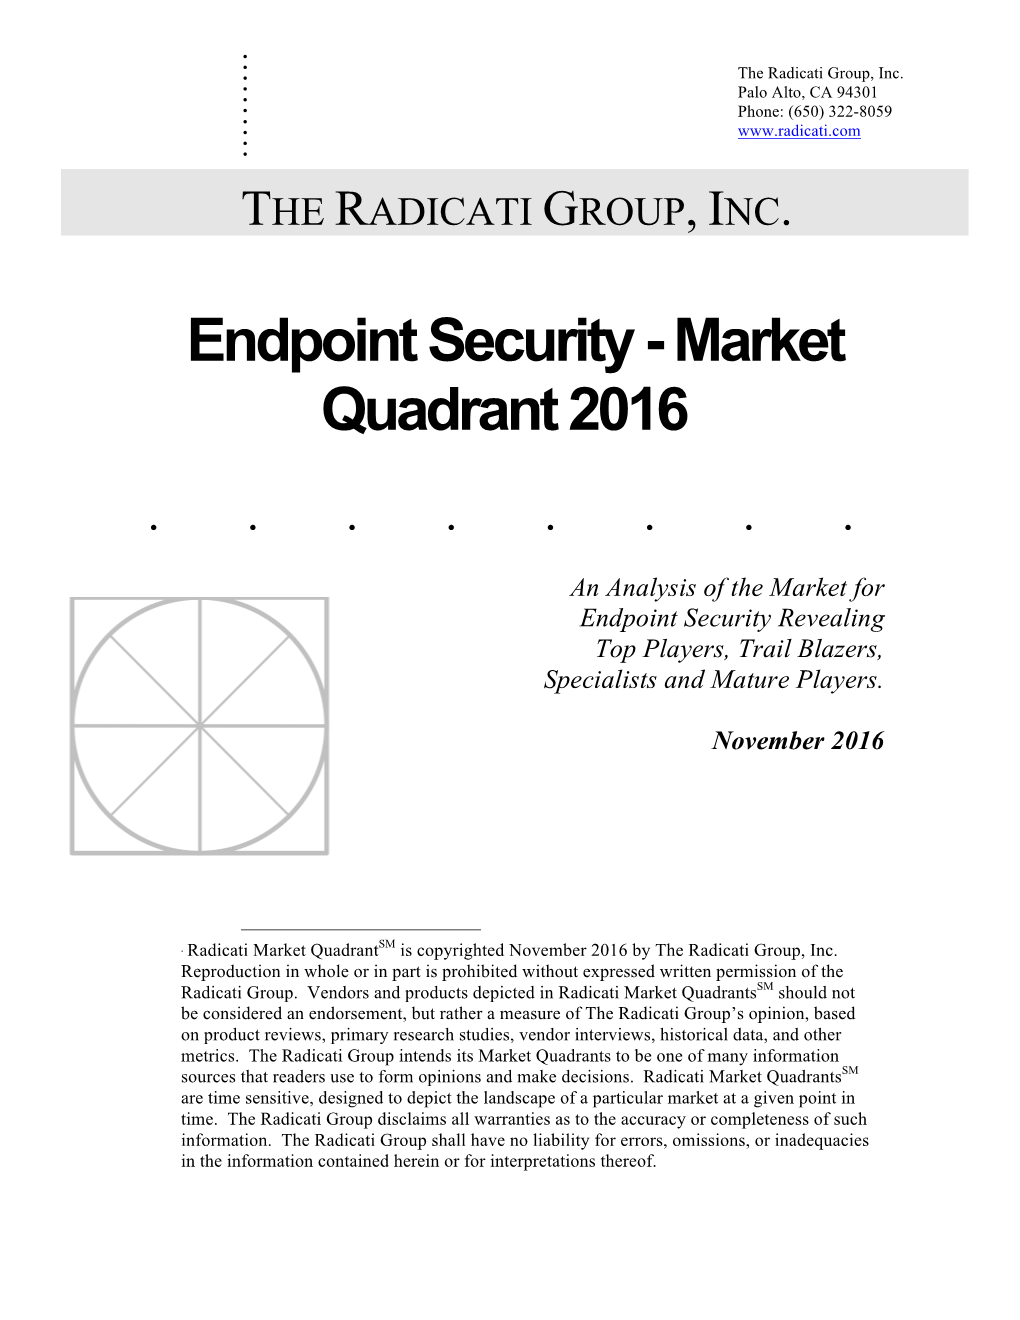 Endpoint Security - Market Quadrant 2016 ∗